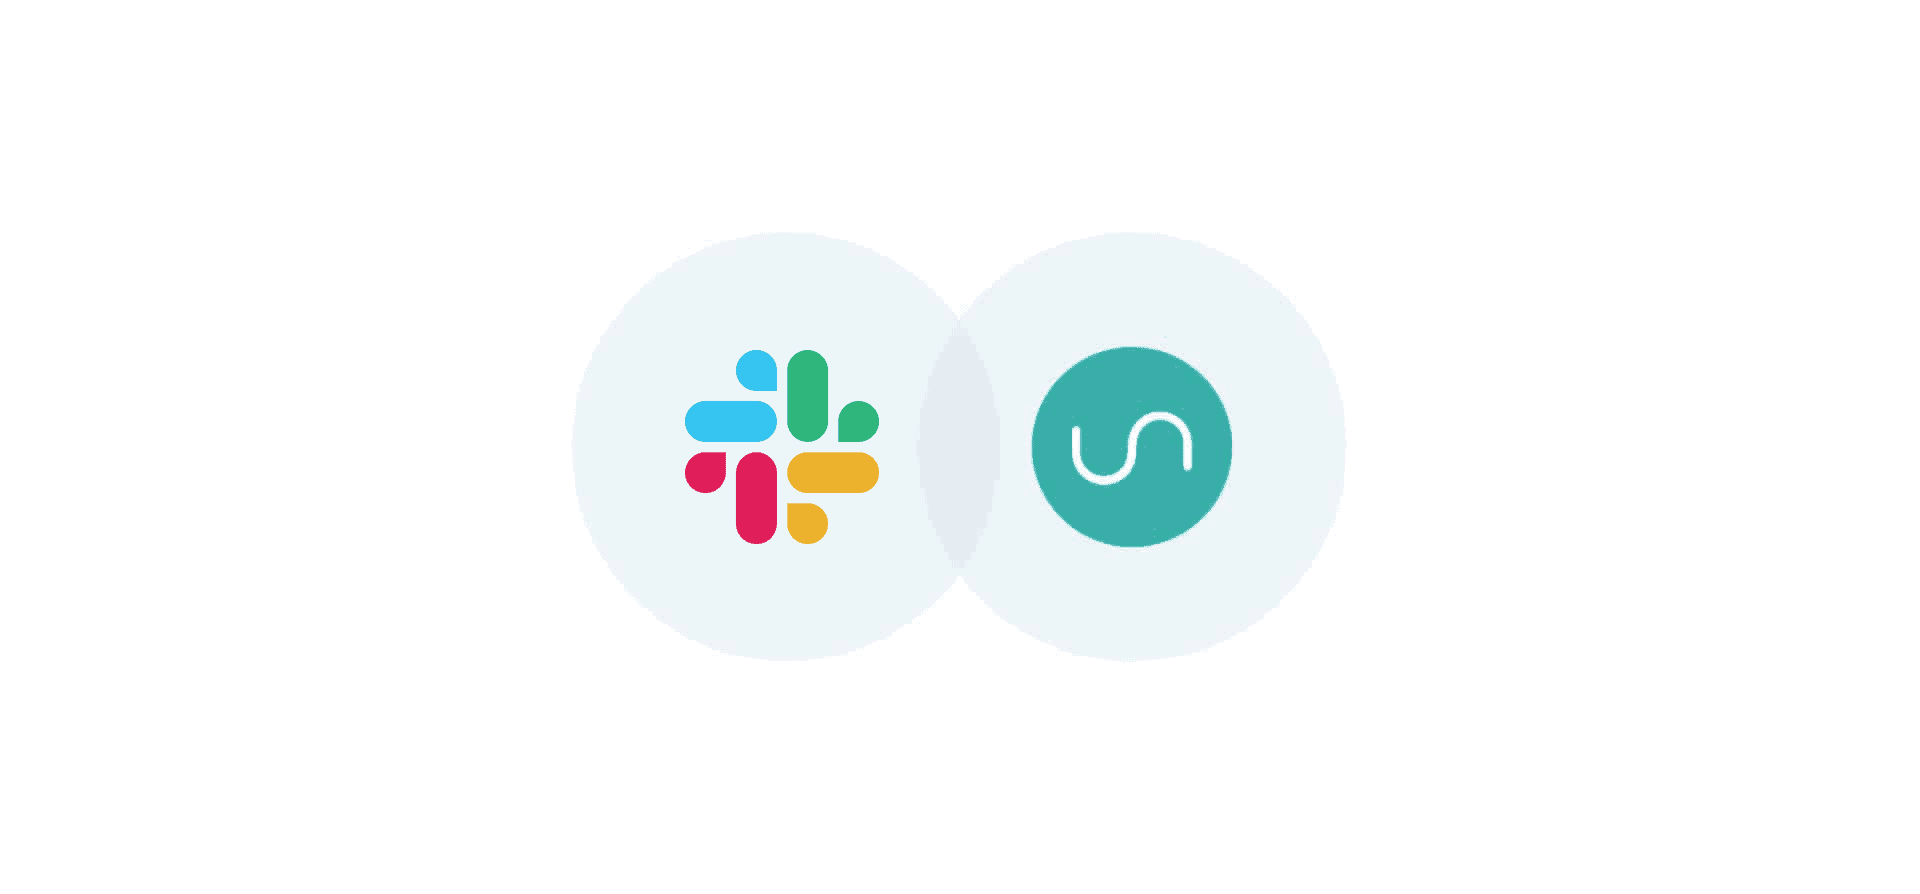 Logos for Slack and Unito, representing Unito's new Slack integration